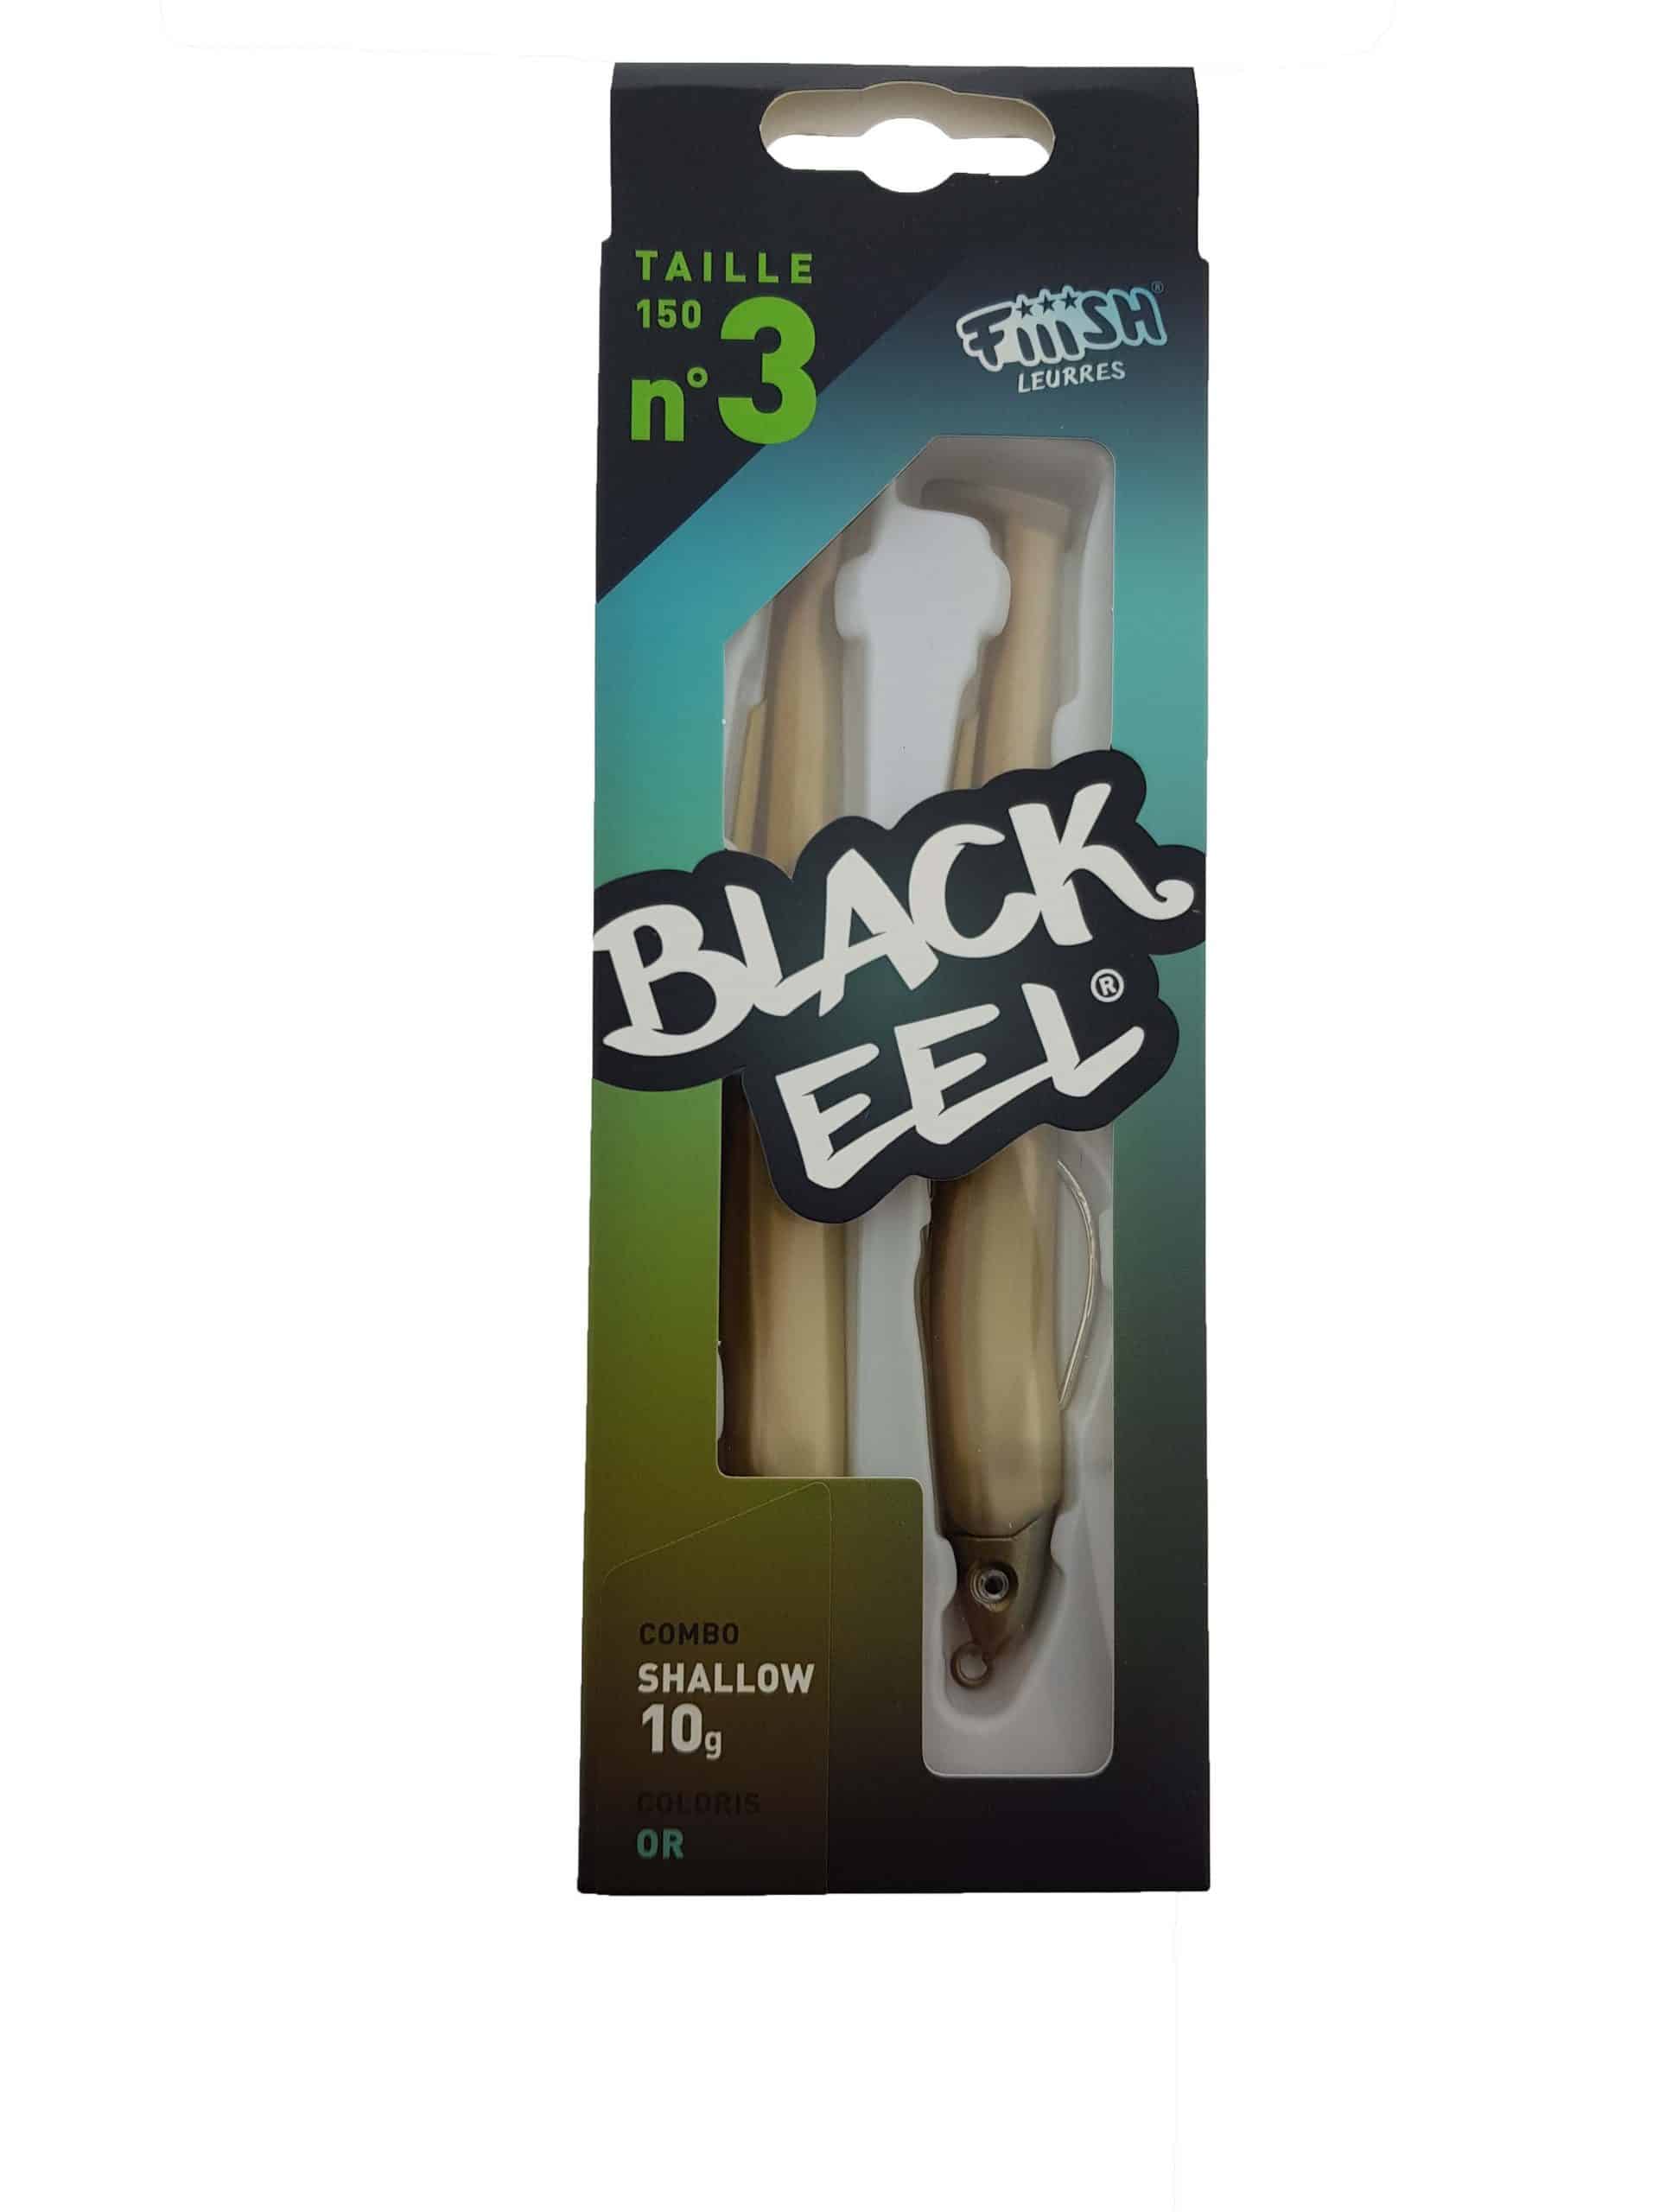 Fiiish Black Eel Combo Shallow